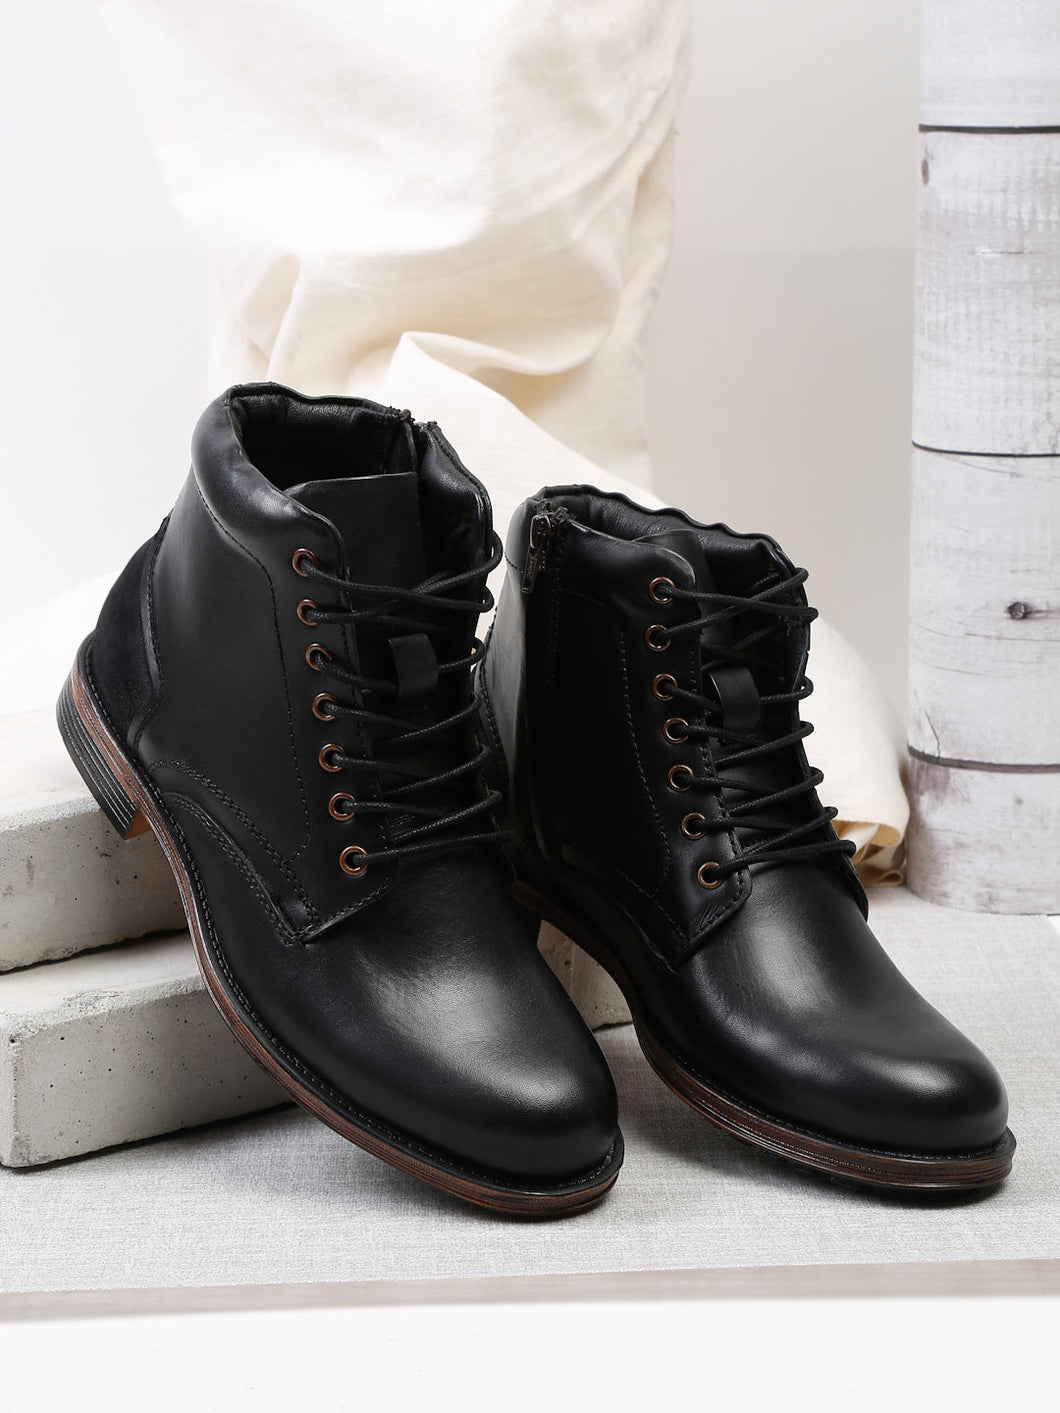 teakwood-genuine-leather-mid-top-black-boots